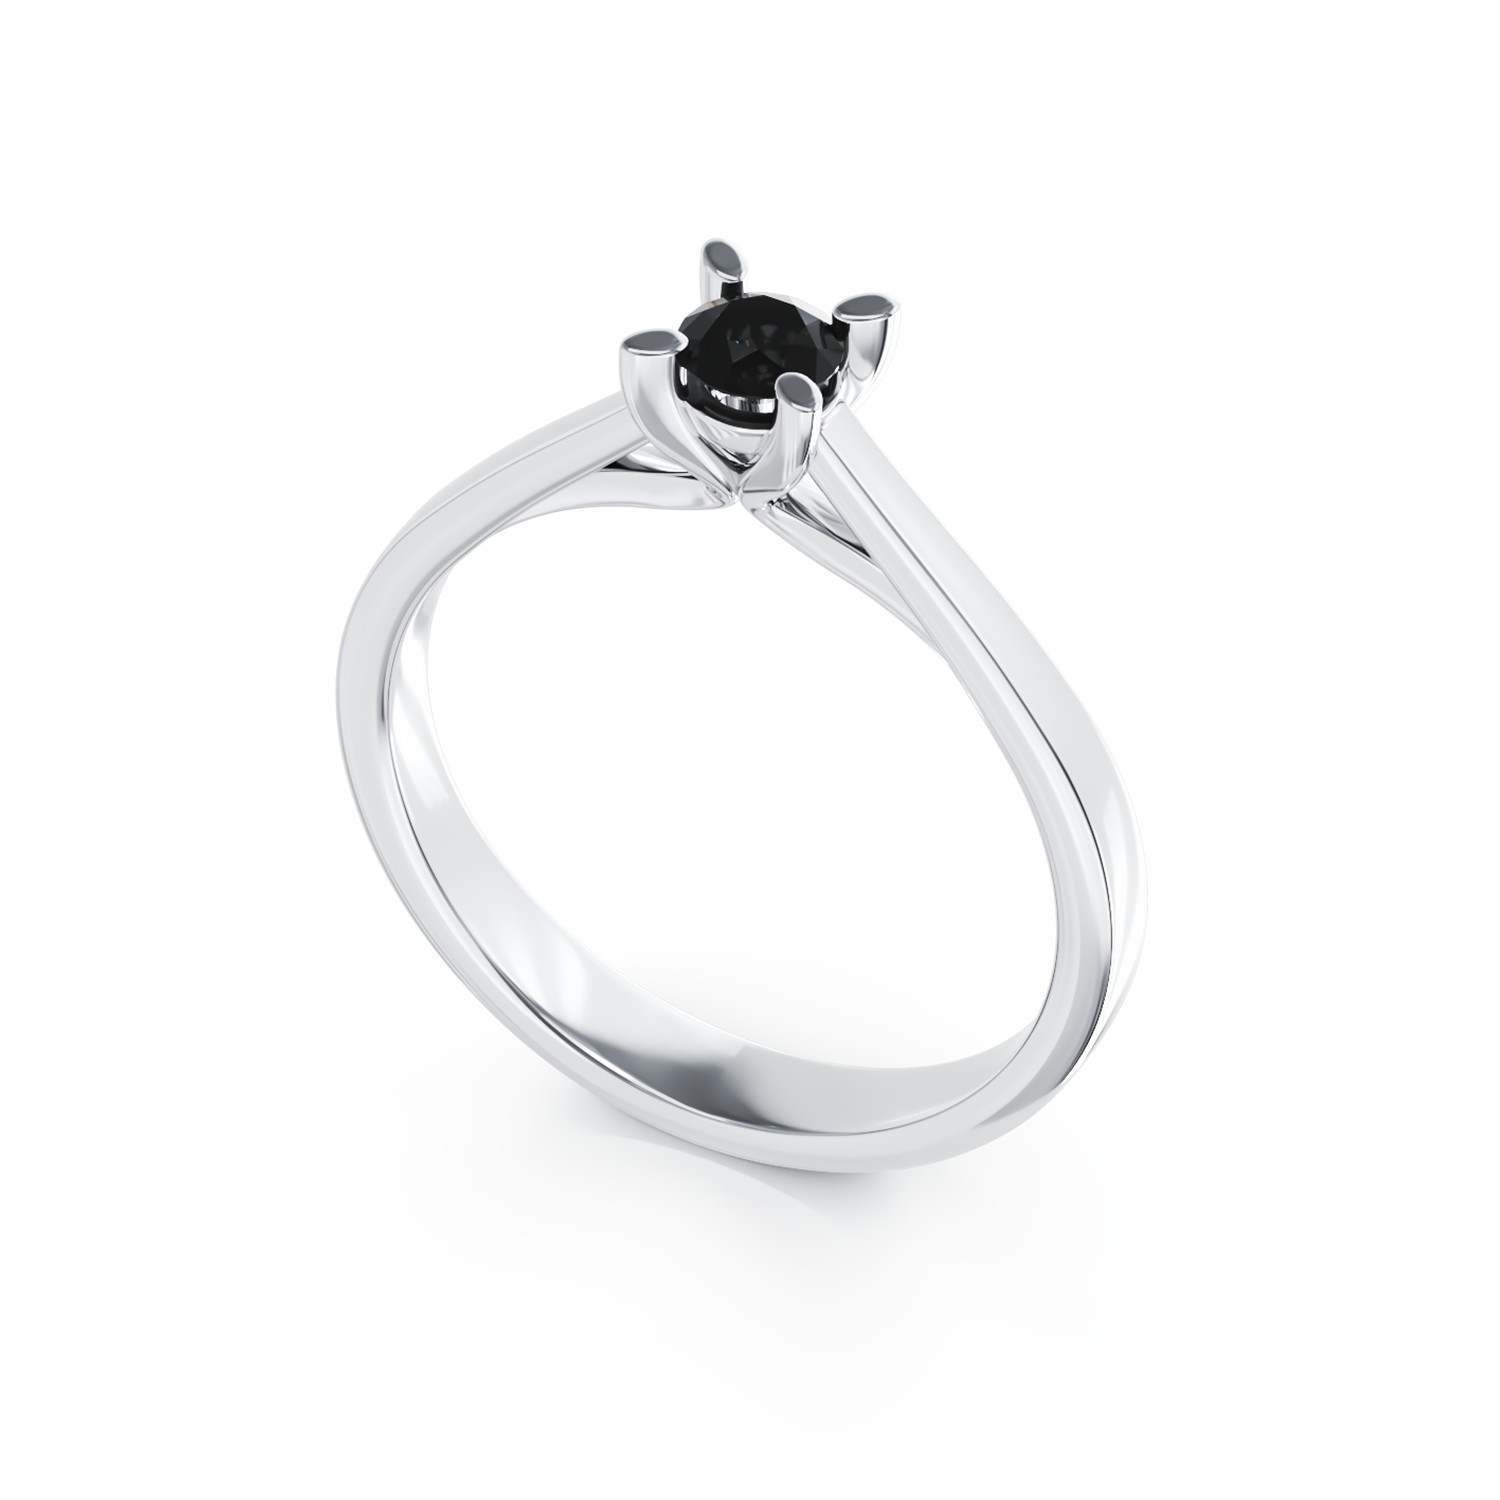 Eljegyzési gyűrű 18K-os fehér aranyból 0,2ct fekete gyémánttal.